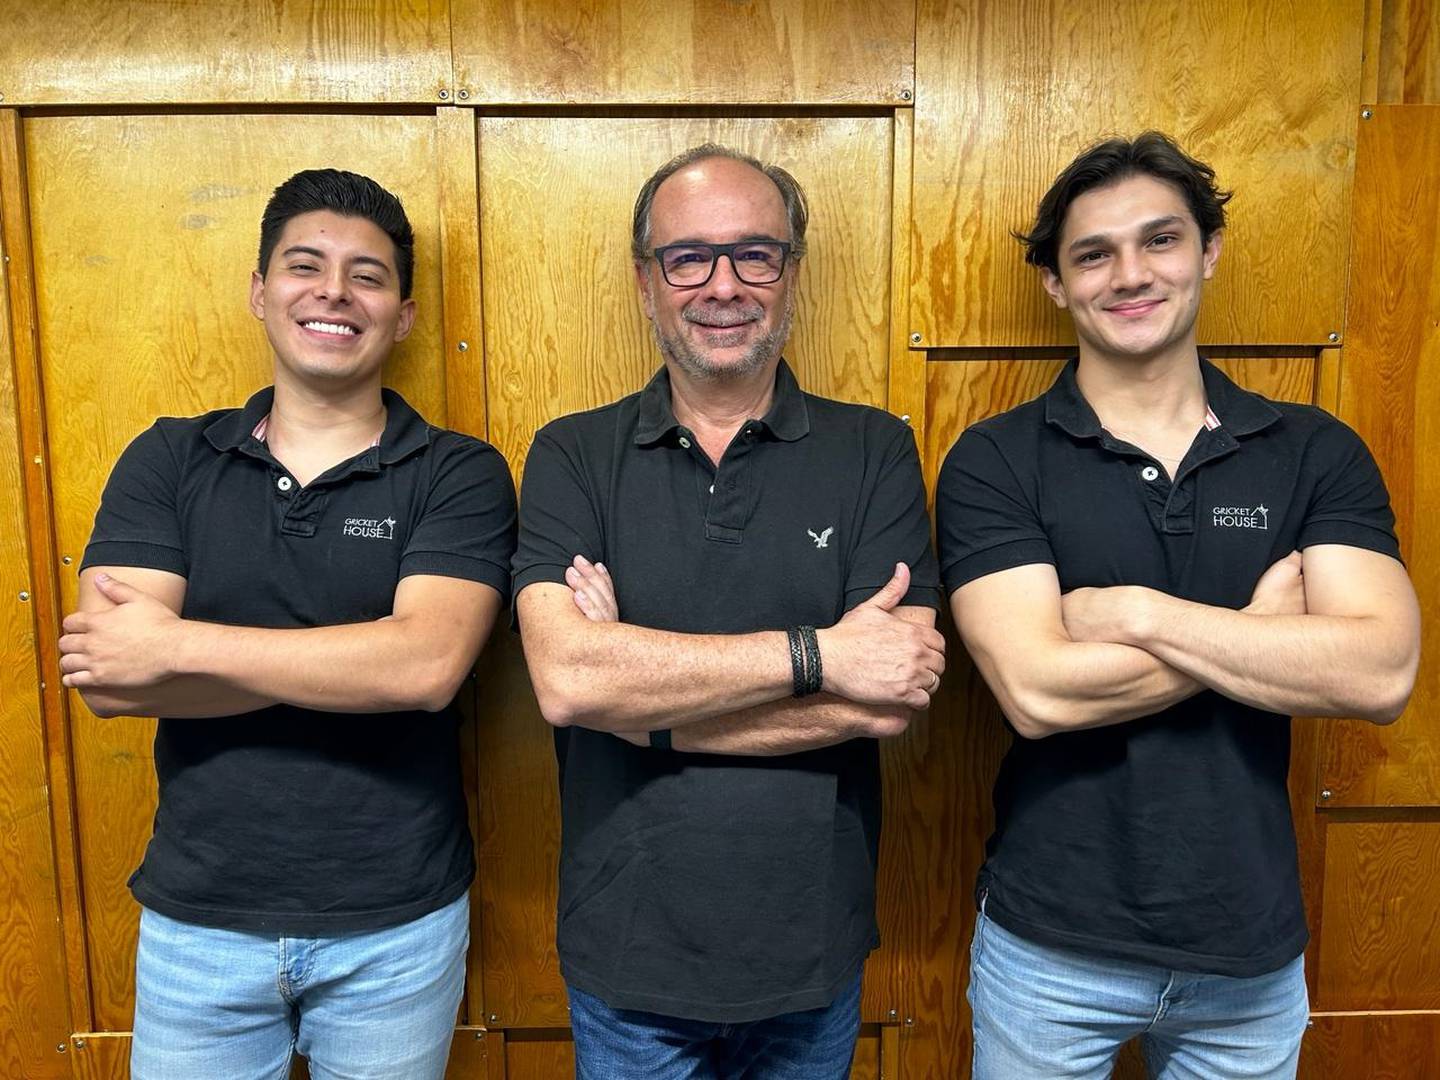 Luis Diego Bolaños, Andrés Muñoz y Alberto Carvajal, son tres ticos que se animaron a emprender en algo tan novedoso que a ellos mismos los sorprendió: barritas a base de polvo de grillos. El emprendimiento se llama “Gricket House”.